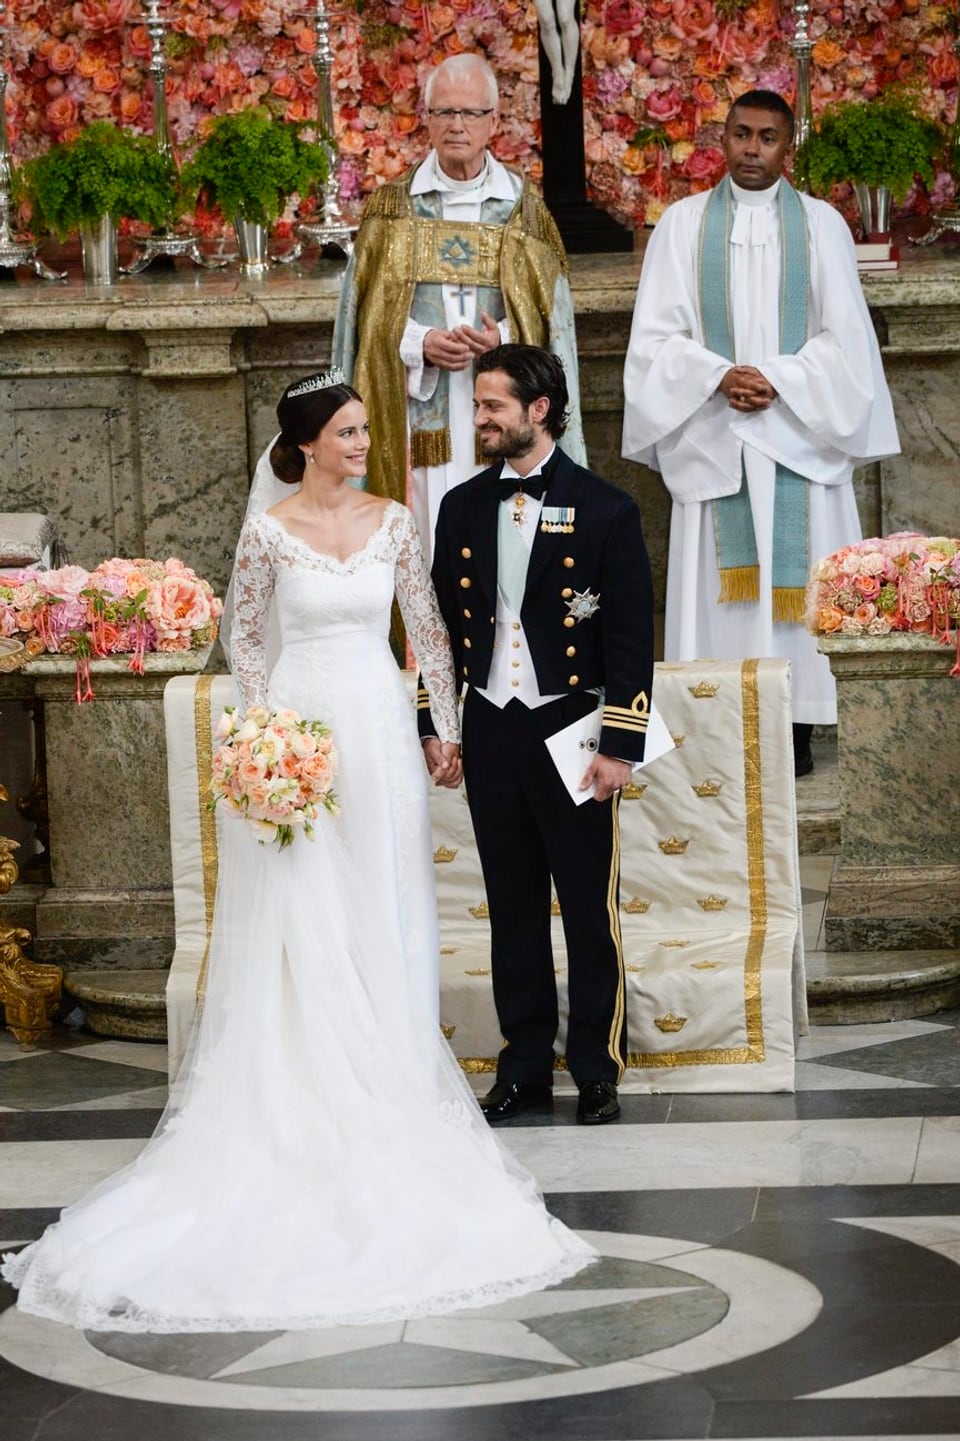 Sofia und Philip Hand in Hand vor dem Altar. Sie mit Blumen in der rechten Hand.